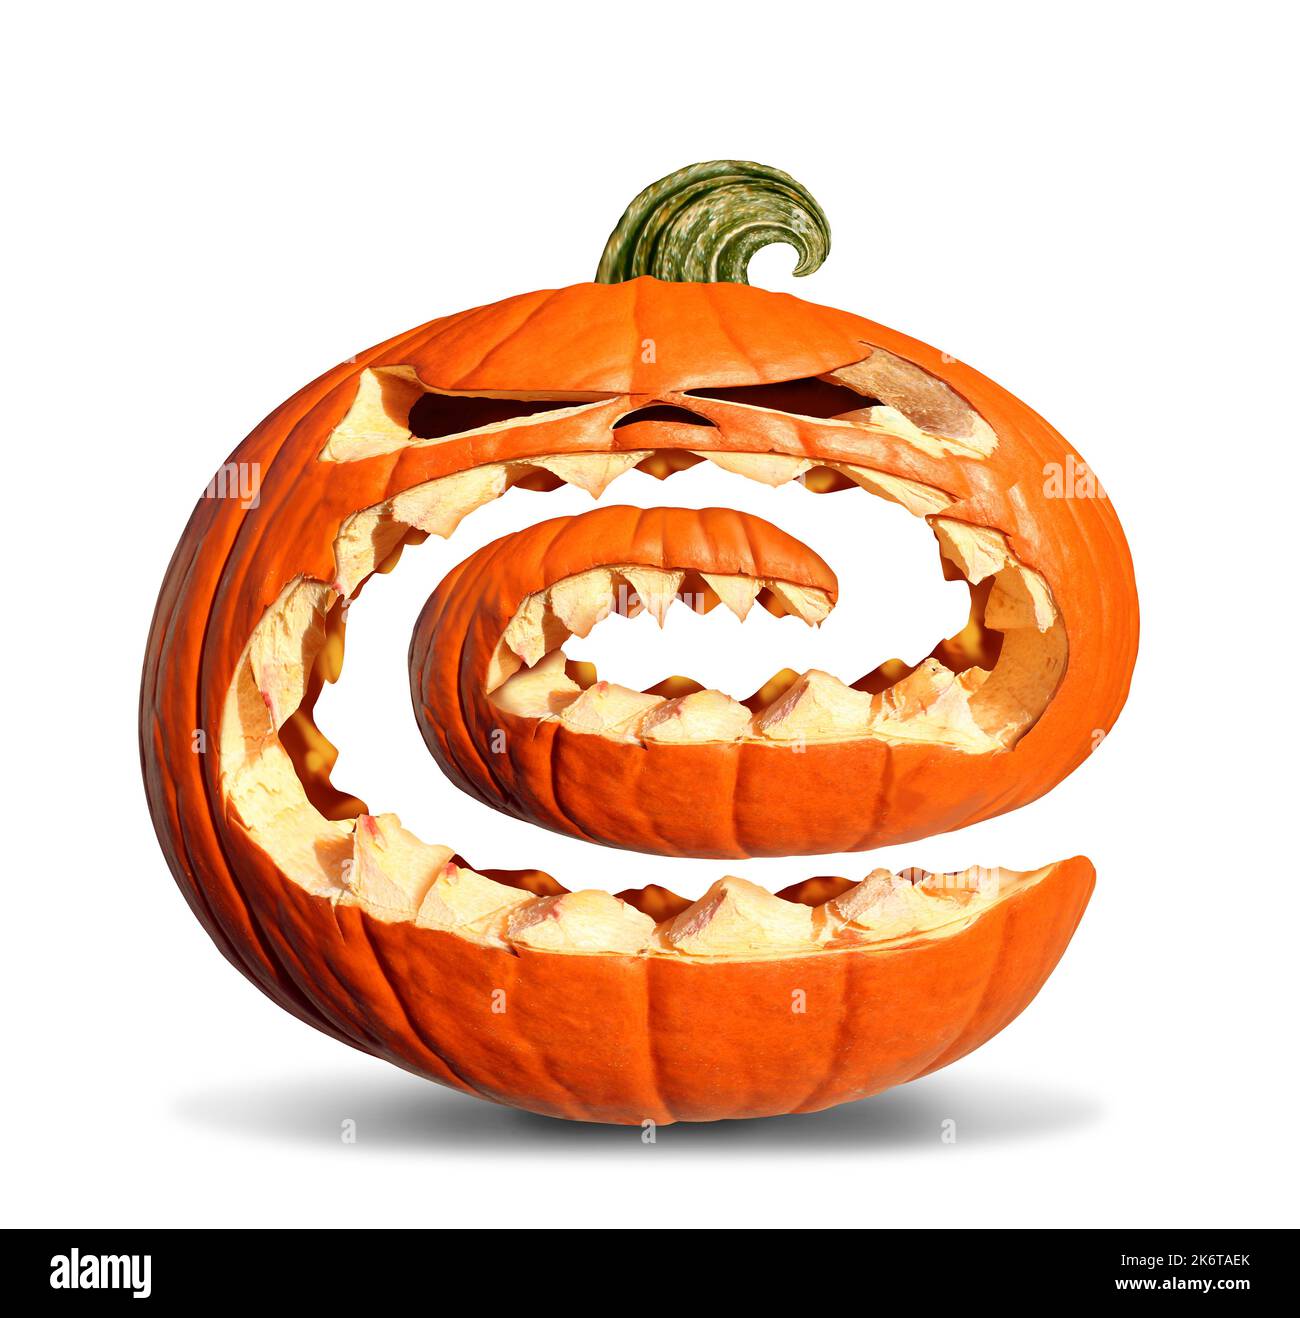 Jack-O-Lantern Pumpkin Swirl comme une citrouille tordue funky comme un personnage orange sinistre d'halloween avec des dents de jackolantern comme une publicité d'automne. Banque D'Images